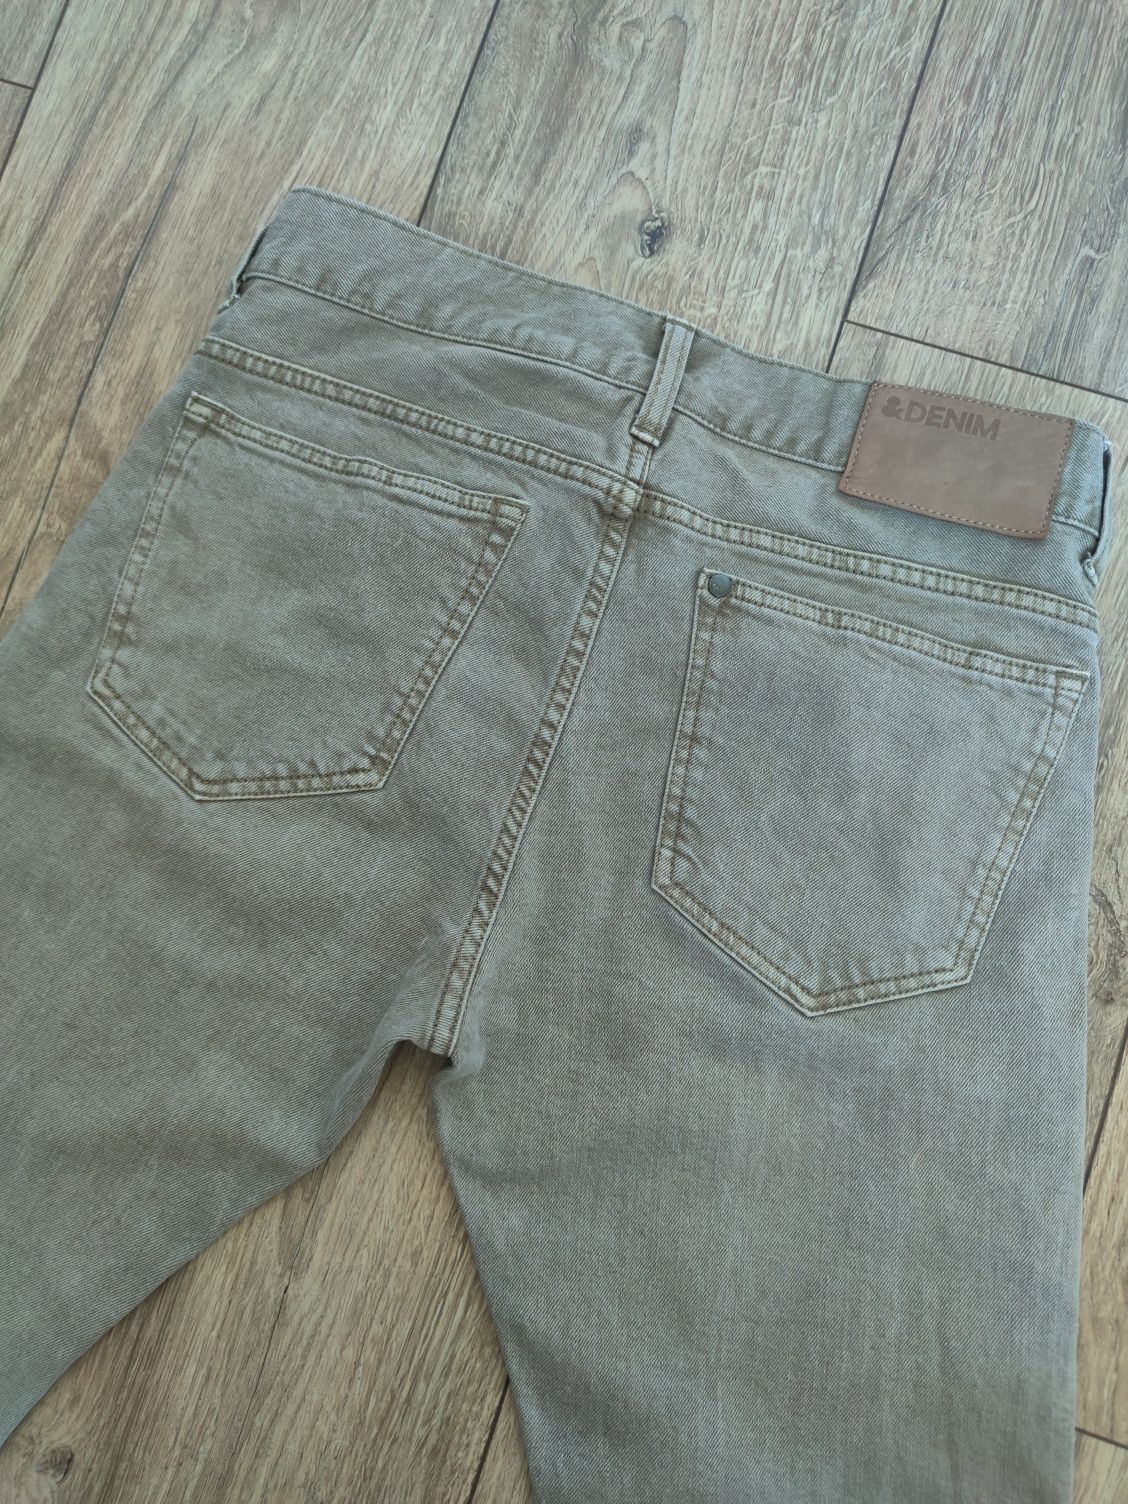 Чоловічі/ підліткові джинси, розмір S/44-46